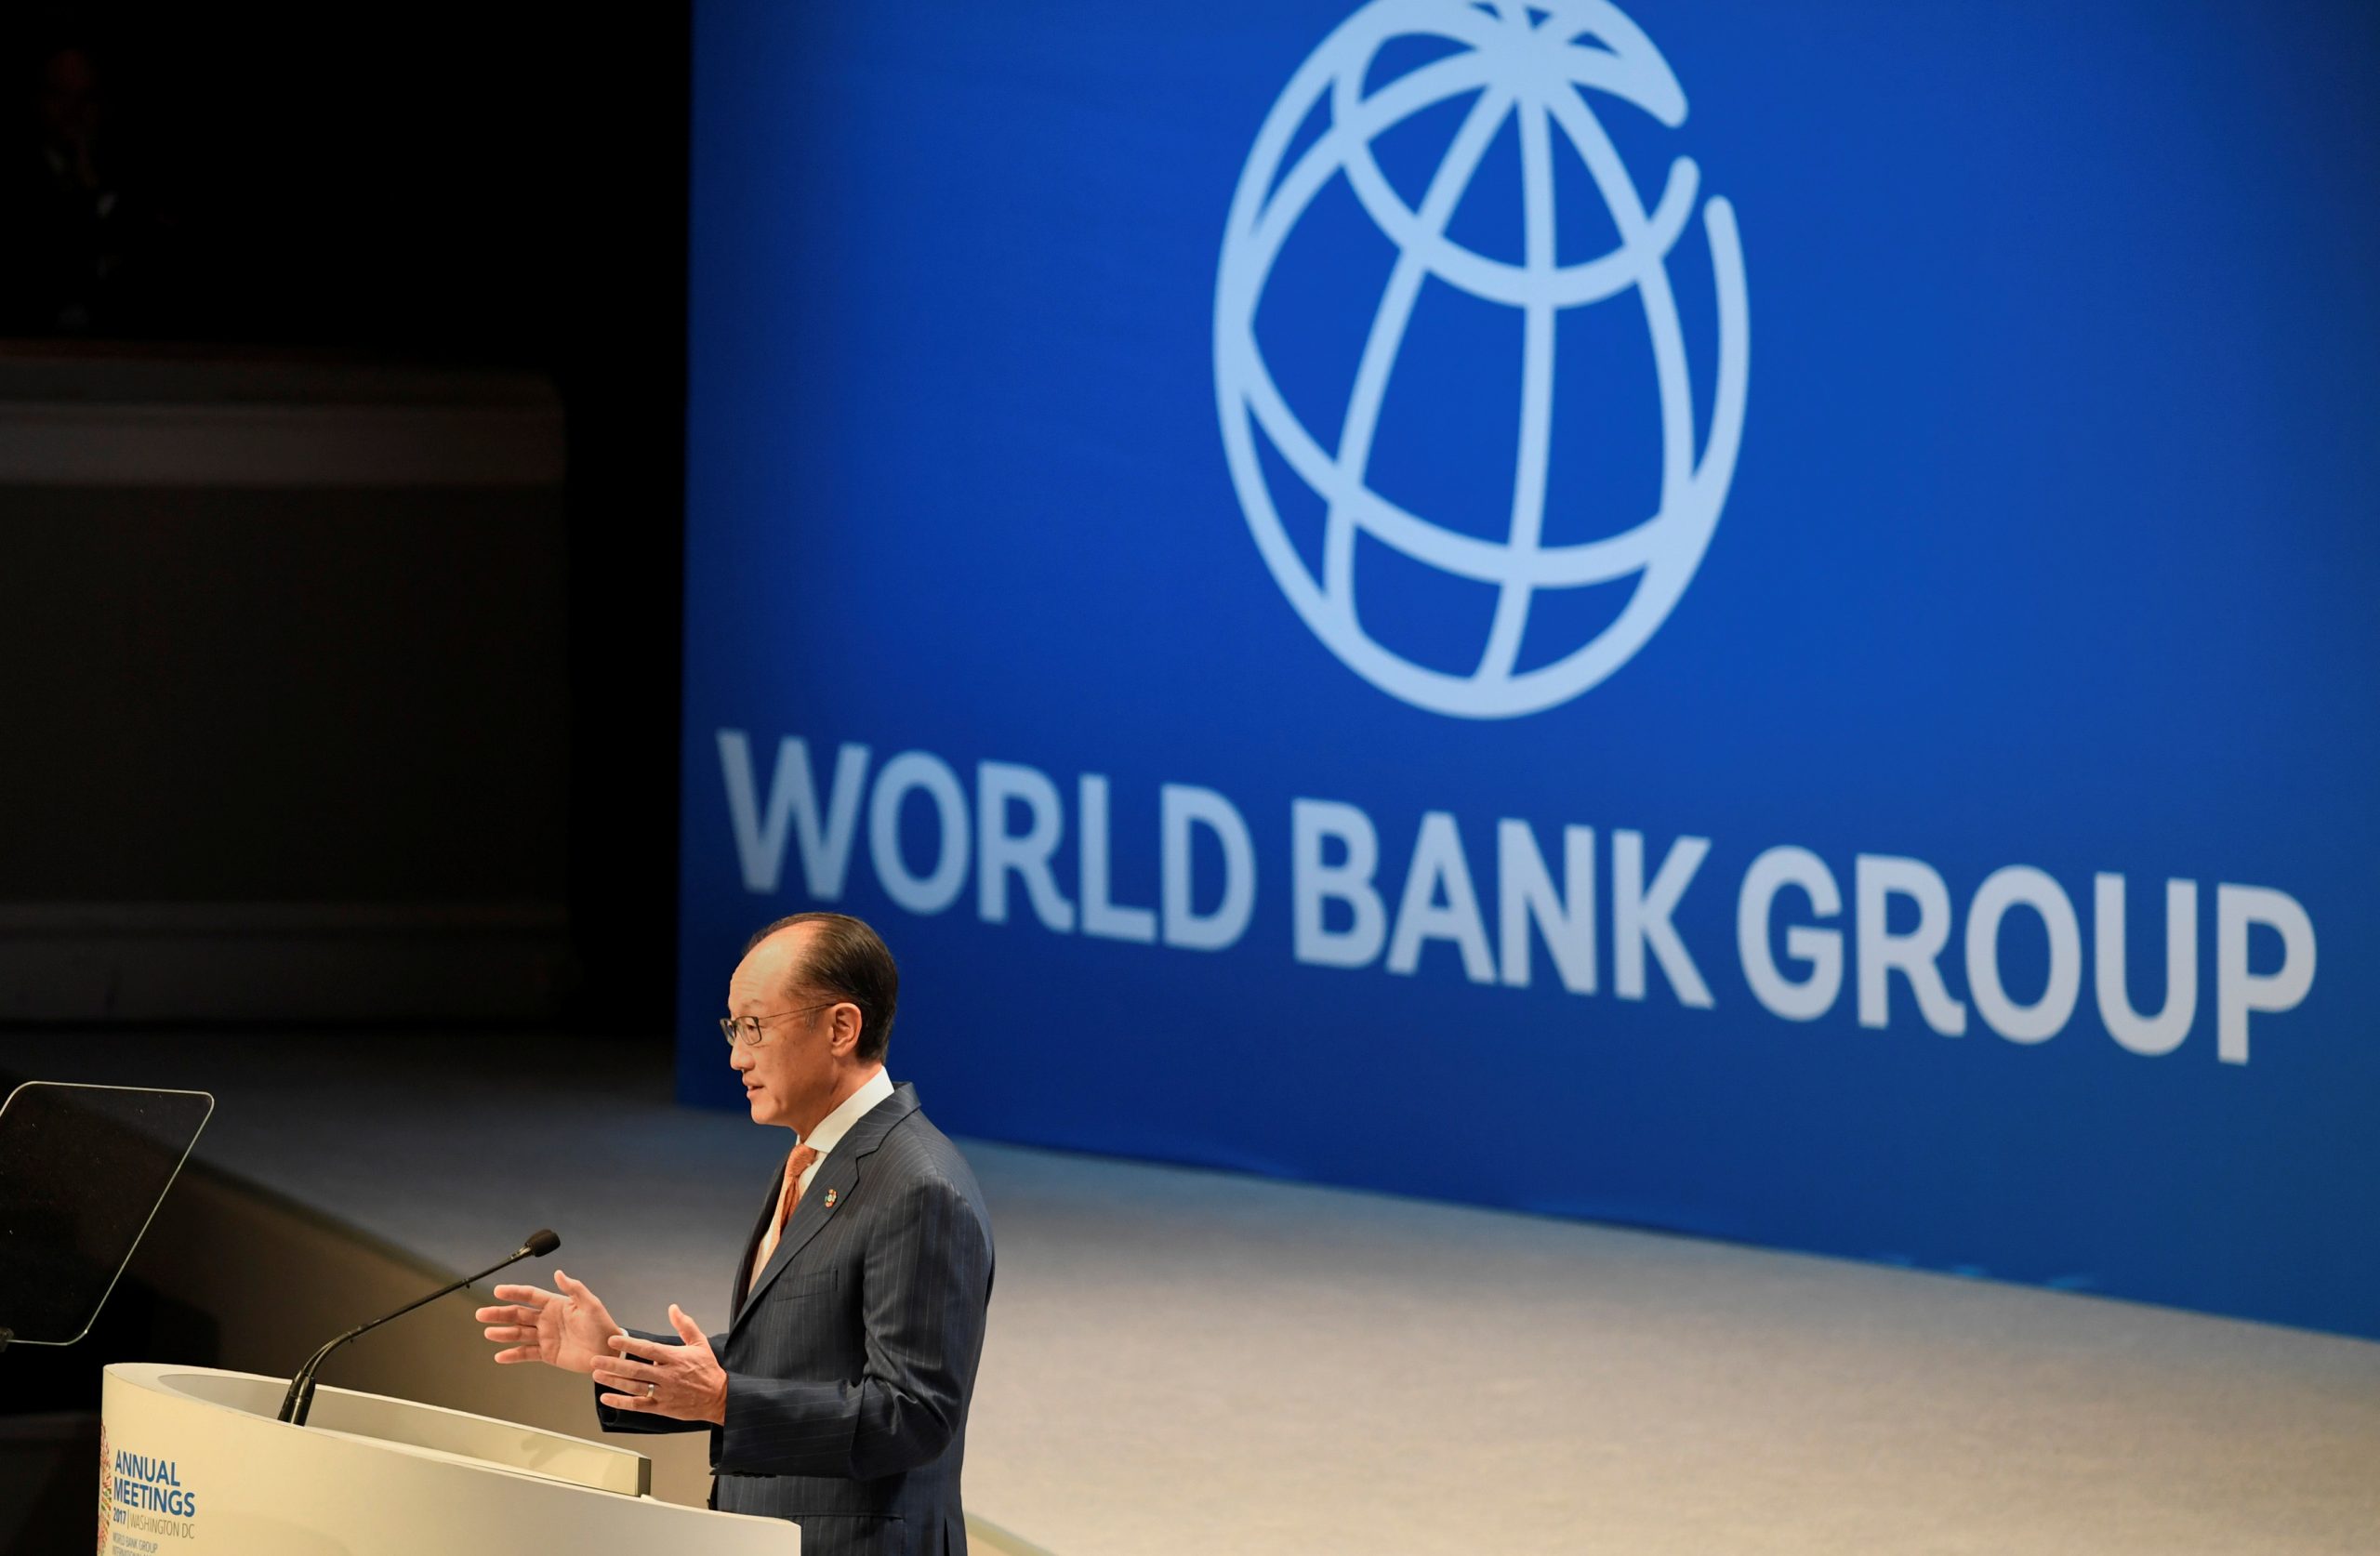 Ngân hàng Thế giới (World Bank) là một tổ chức tài chính quốc tế nơi cung cấp những khoản vay